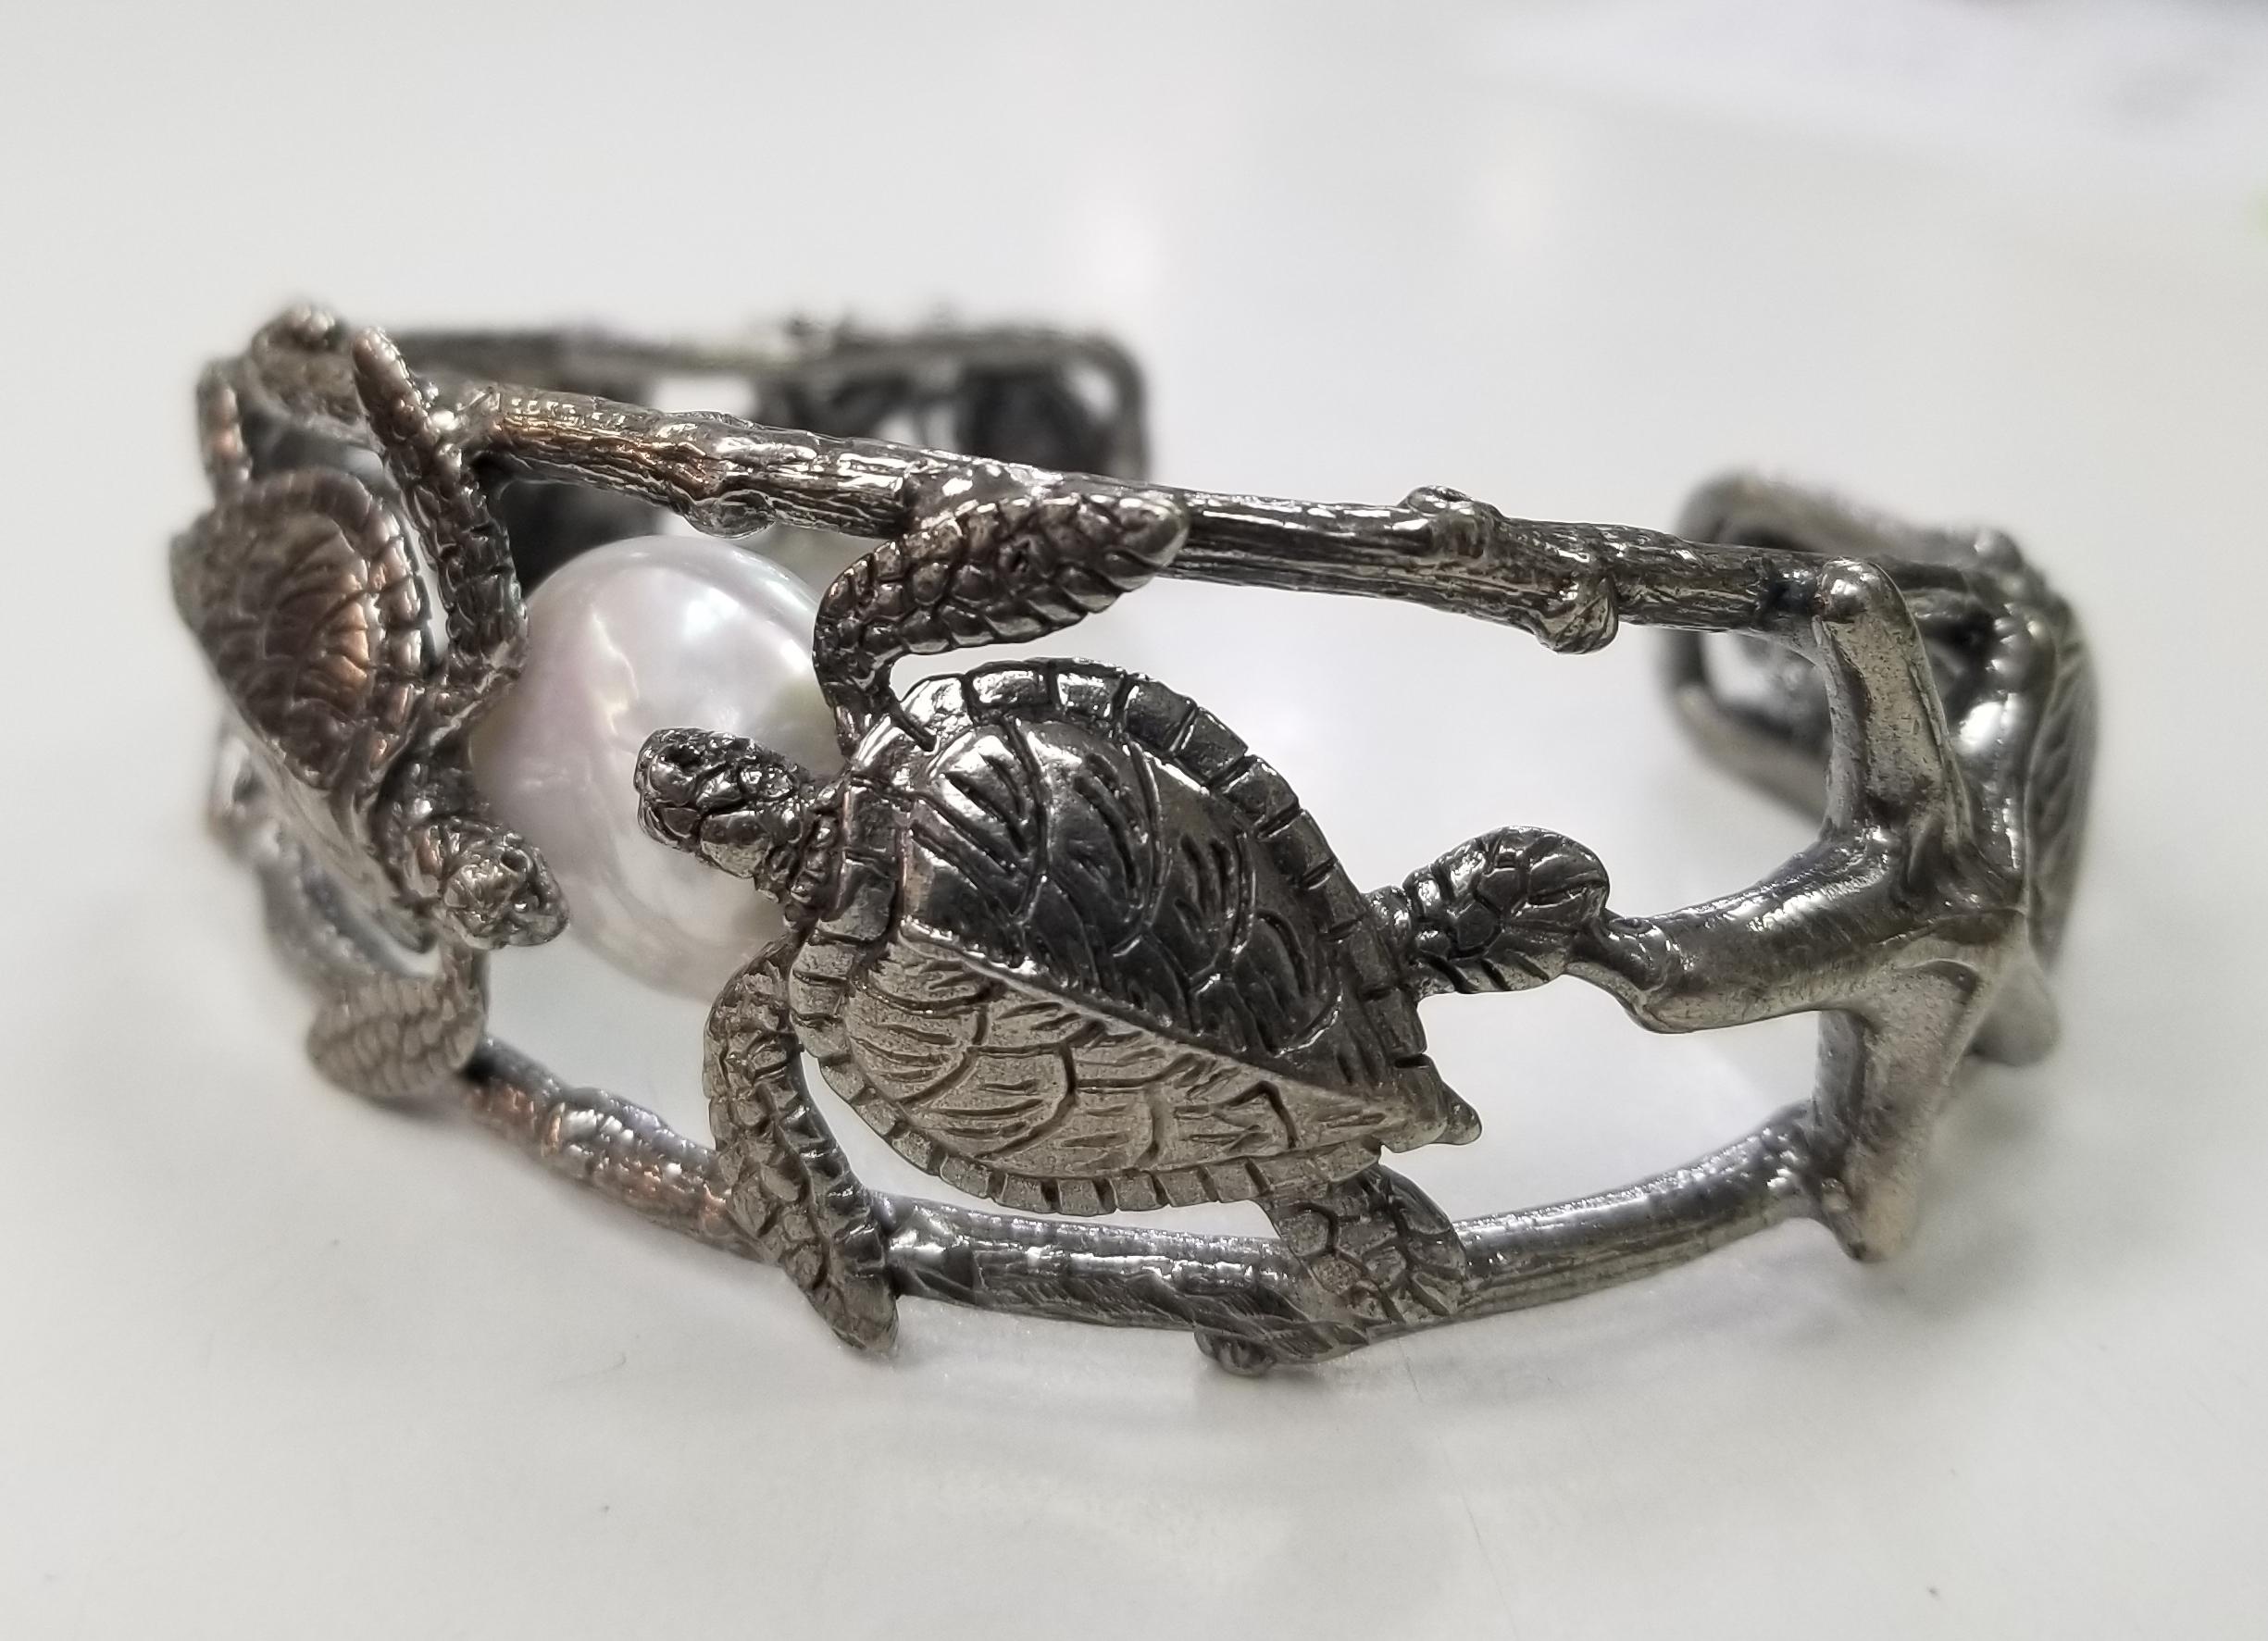 Sterling Silber Gresha Signatur Rinde, Schildkröte und Muschel mit einer Perle.   Das Silber wurde schwarz rhodiniert, um es zu veredeln. 
*dieses Design ist unseres und kann in jeder anderen Form erstellt werden; Ring, Halskette, Armband oder